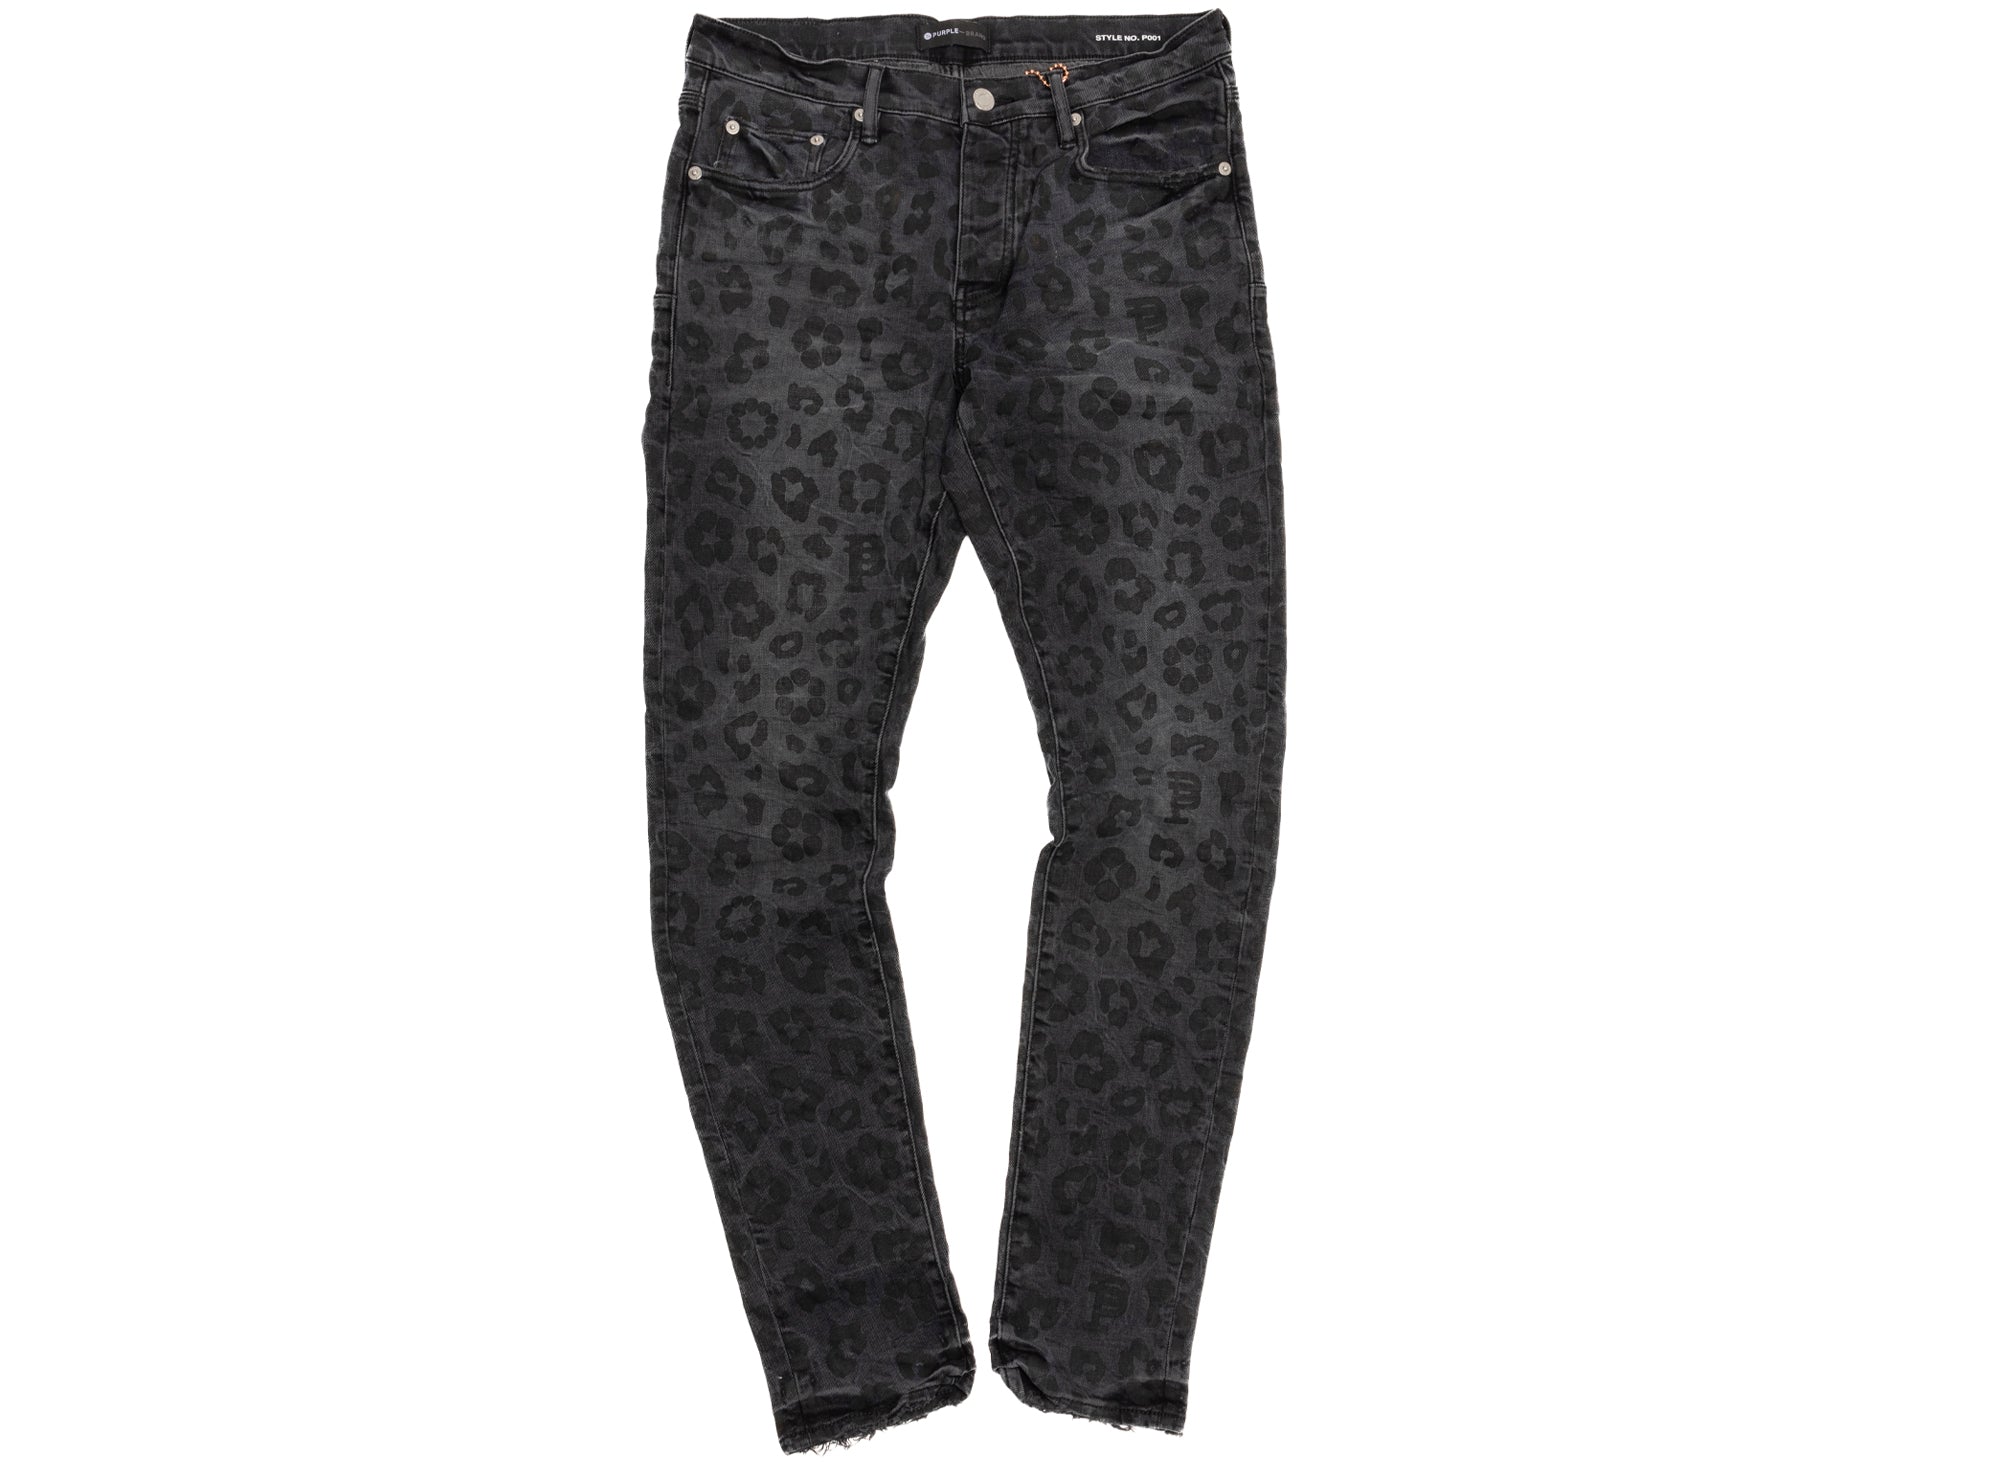 Purple Brand Black Monogram Leopard Print Jeans – Oneness Boutique